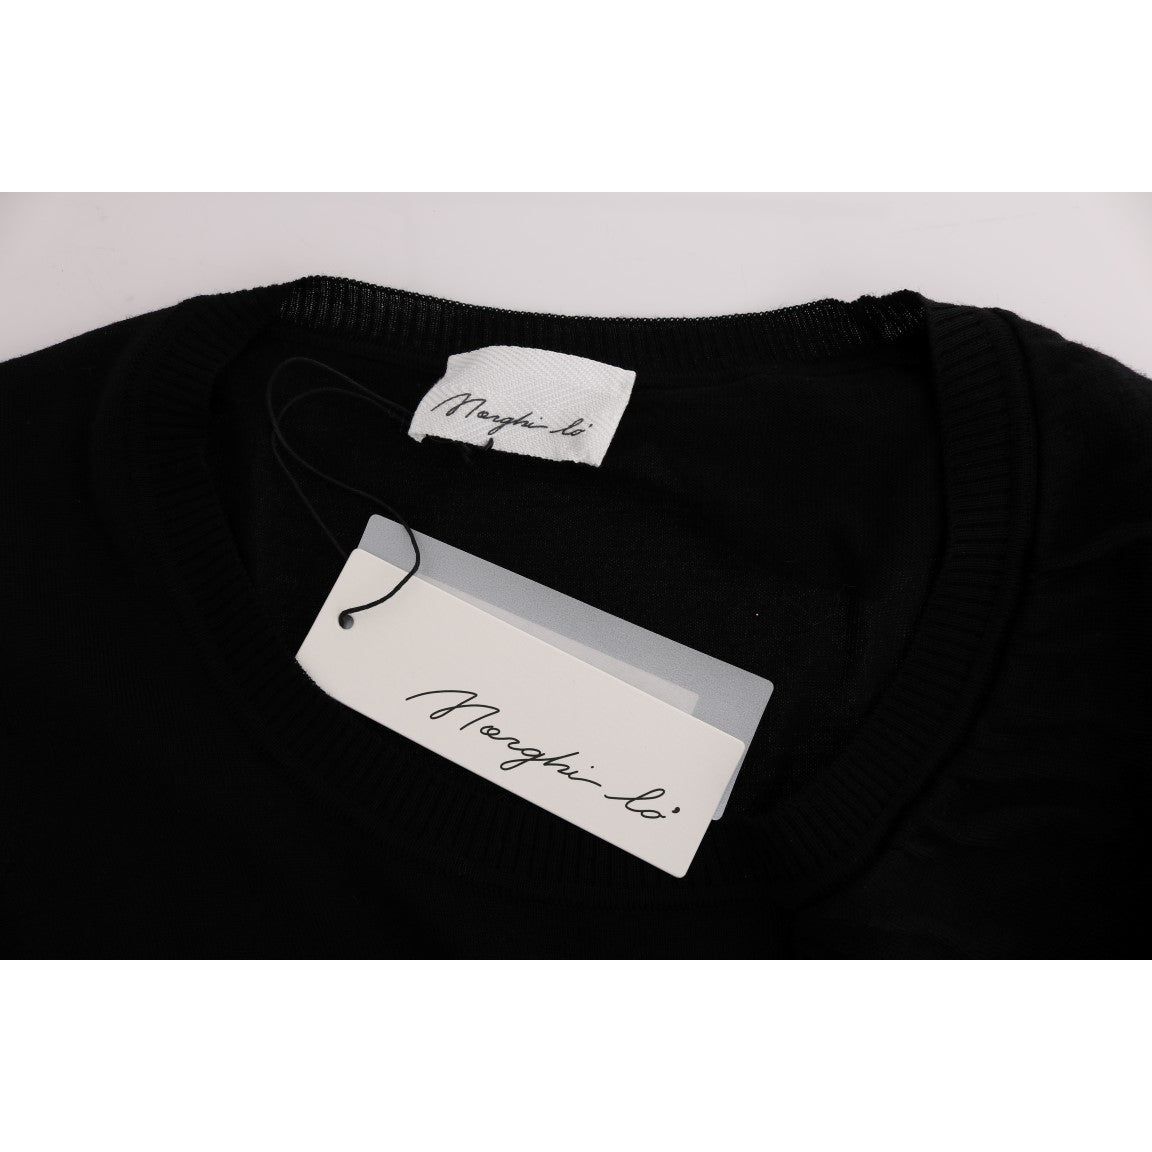 MARGHI LO' | Black 100% Lana Wool Top Blouse T-shirt | McRichard Designer Brands